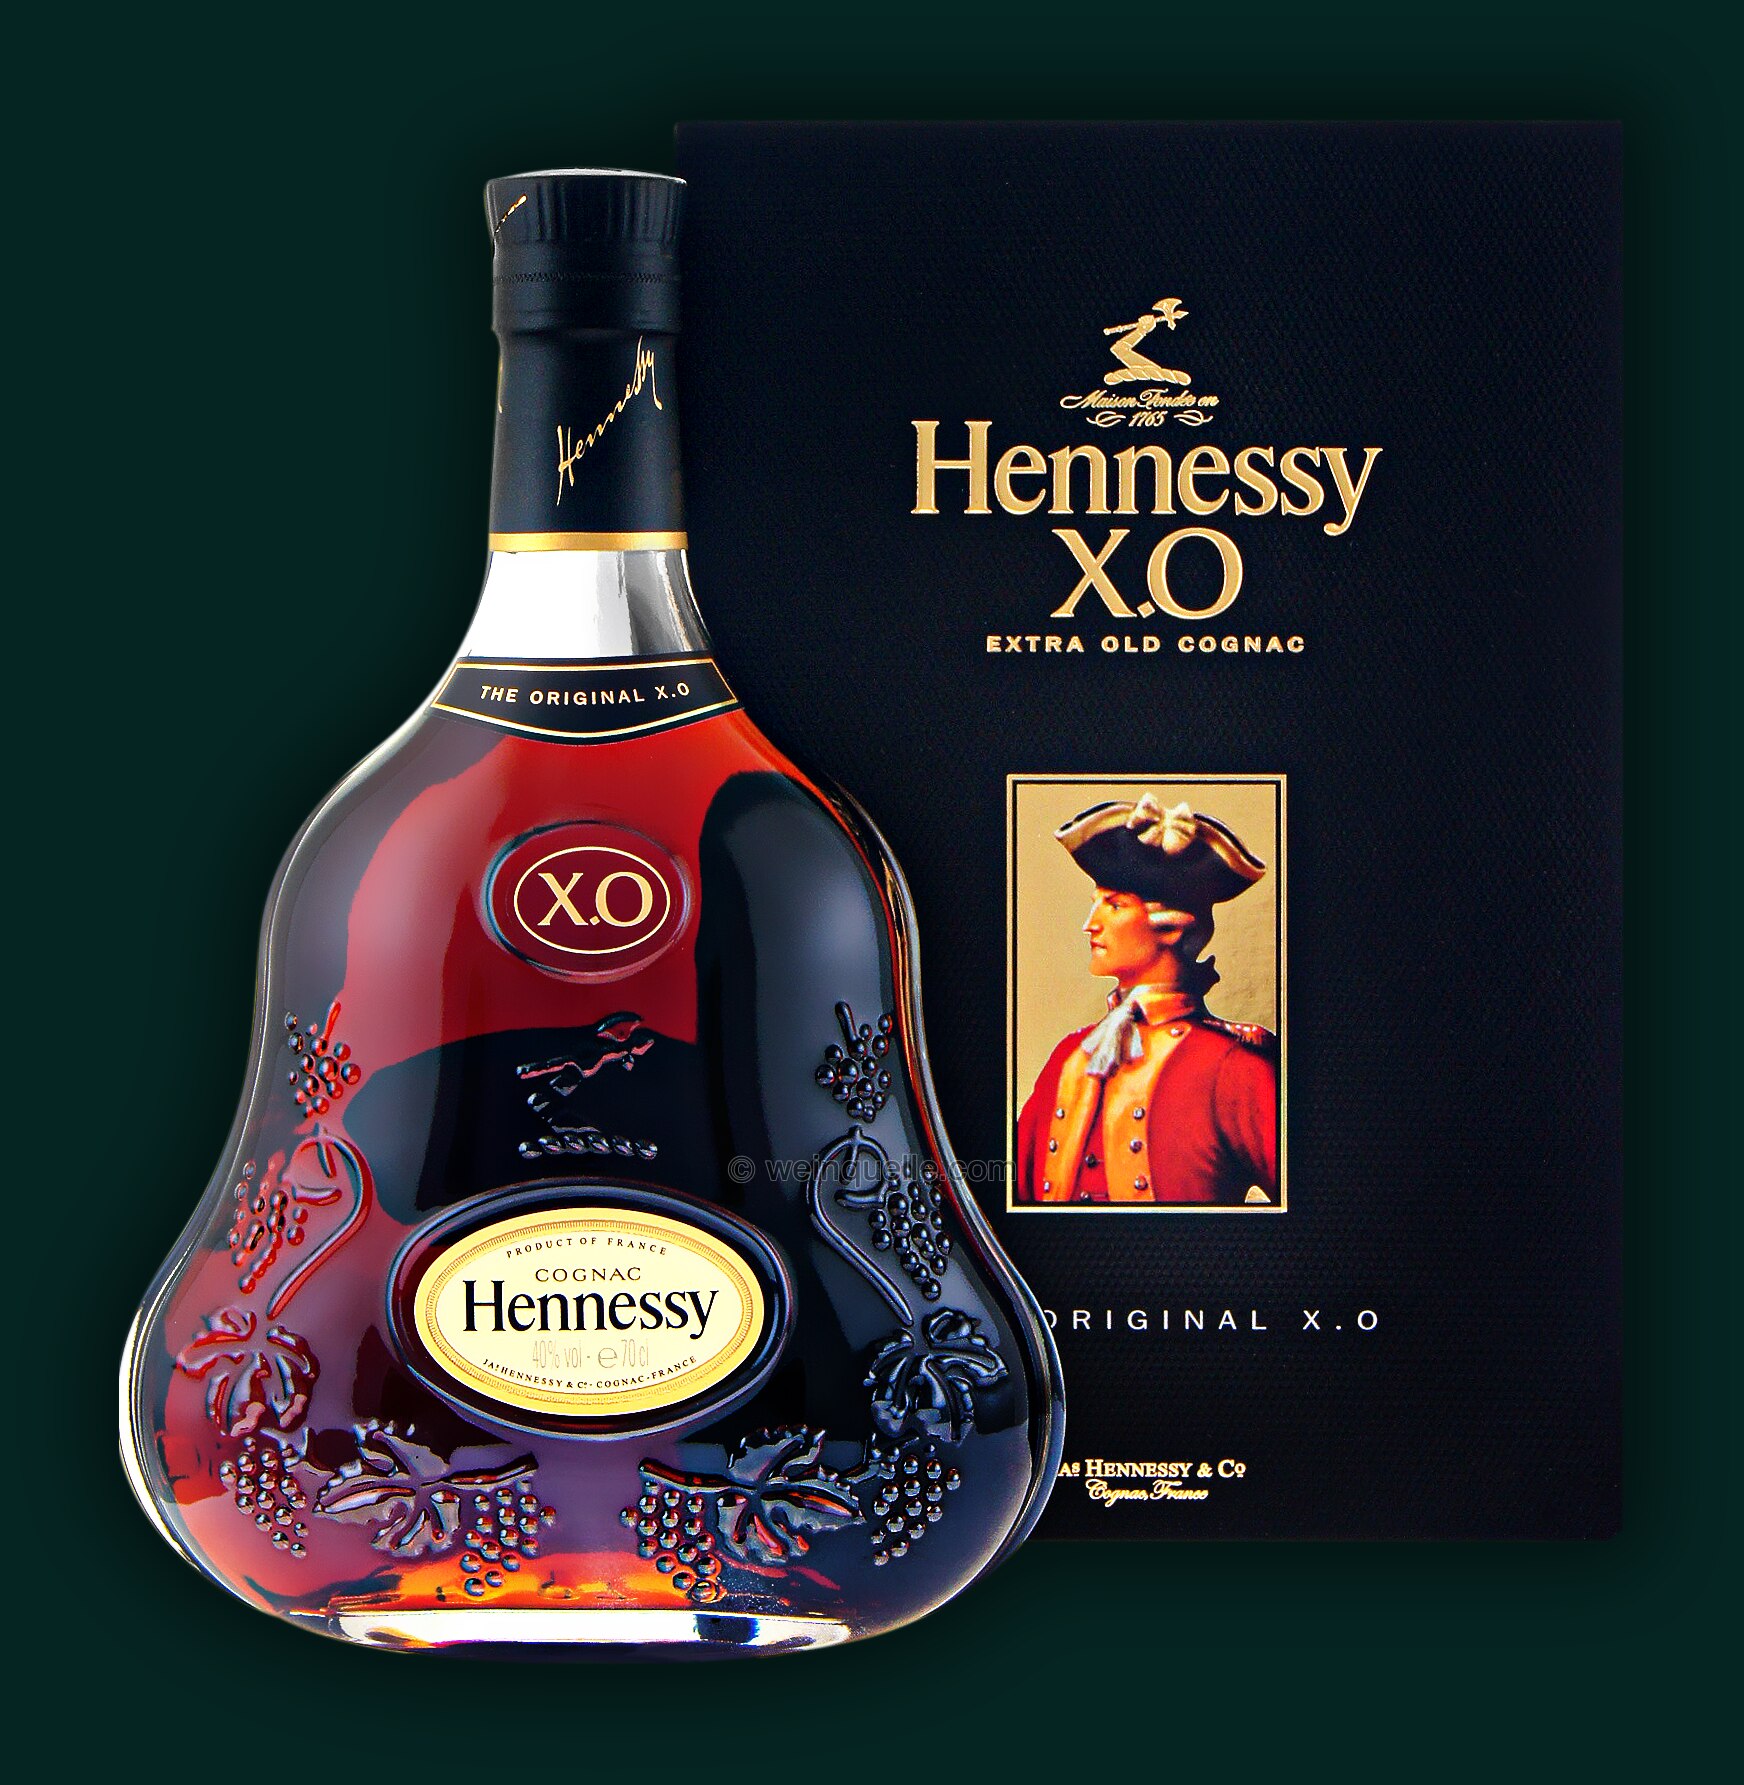 Hennessy Xo 21000 € Weinquelle Lühmann